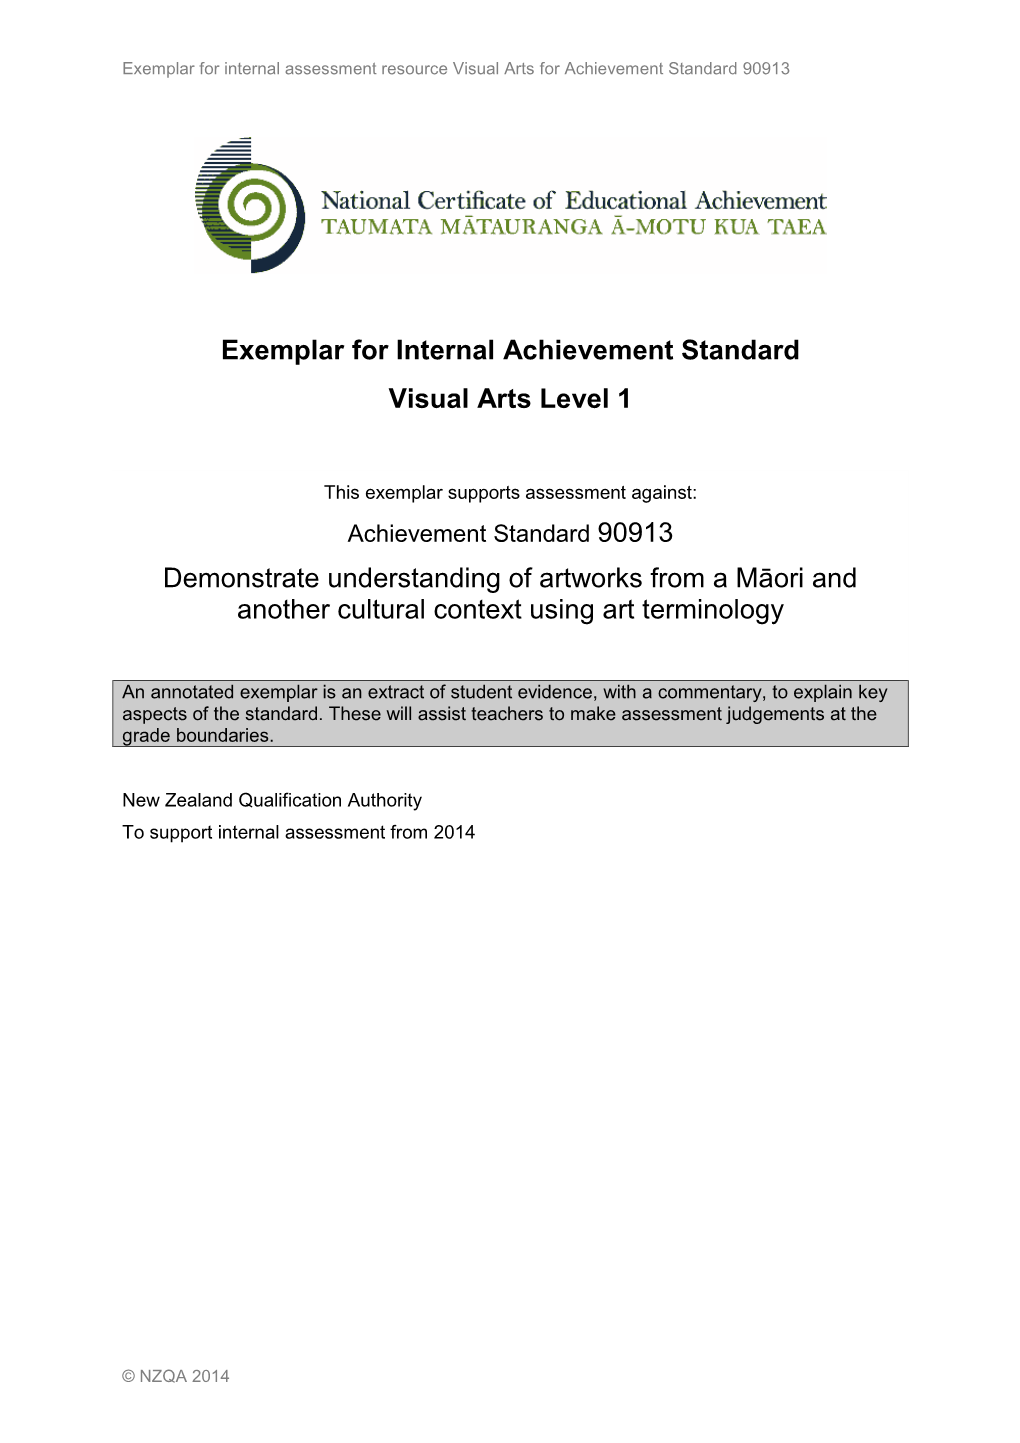 Internal Assessment Resource Visual Arts for Achievement Standard 90913